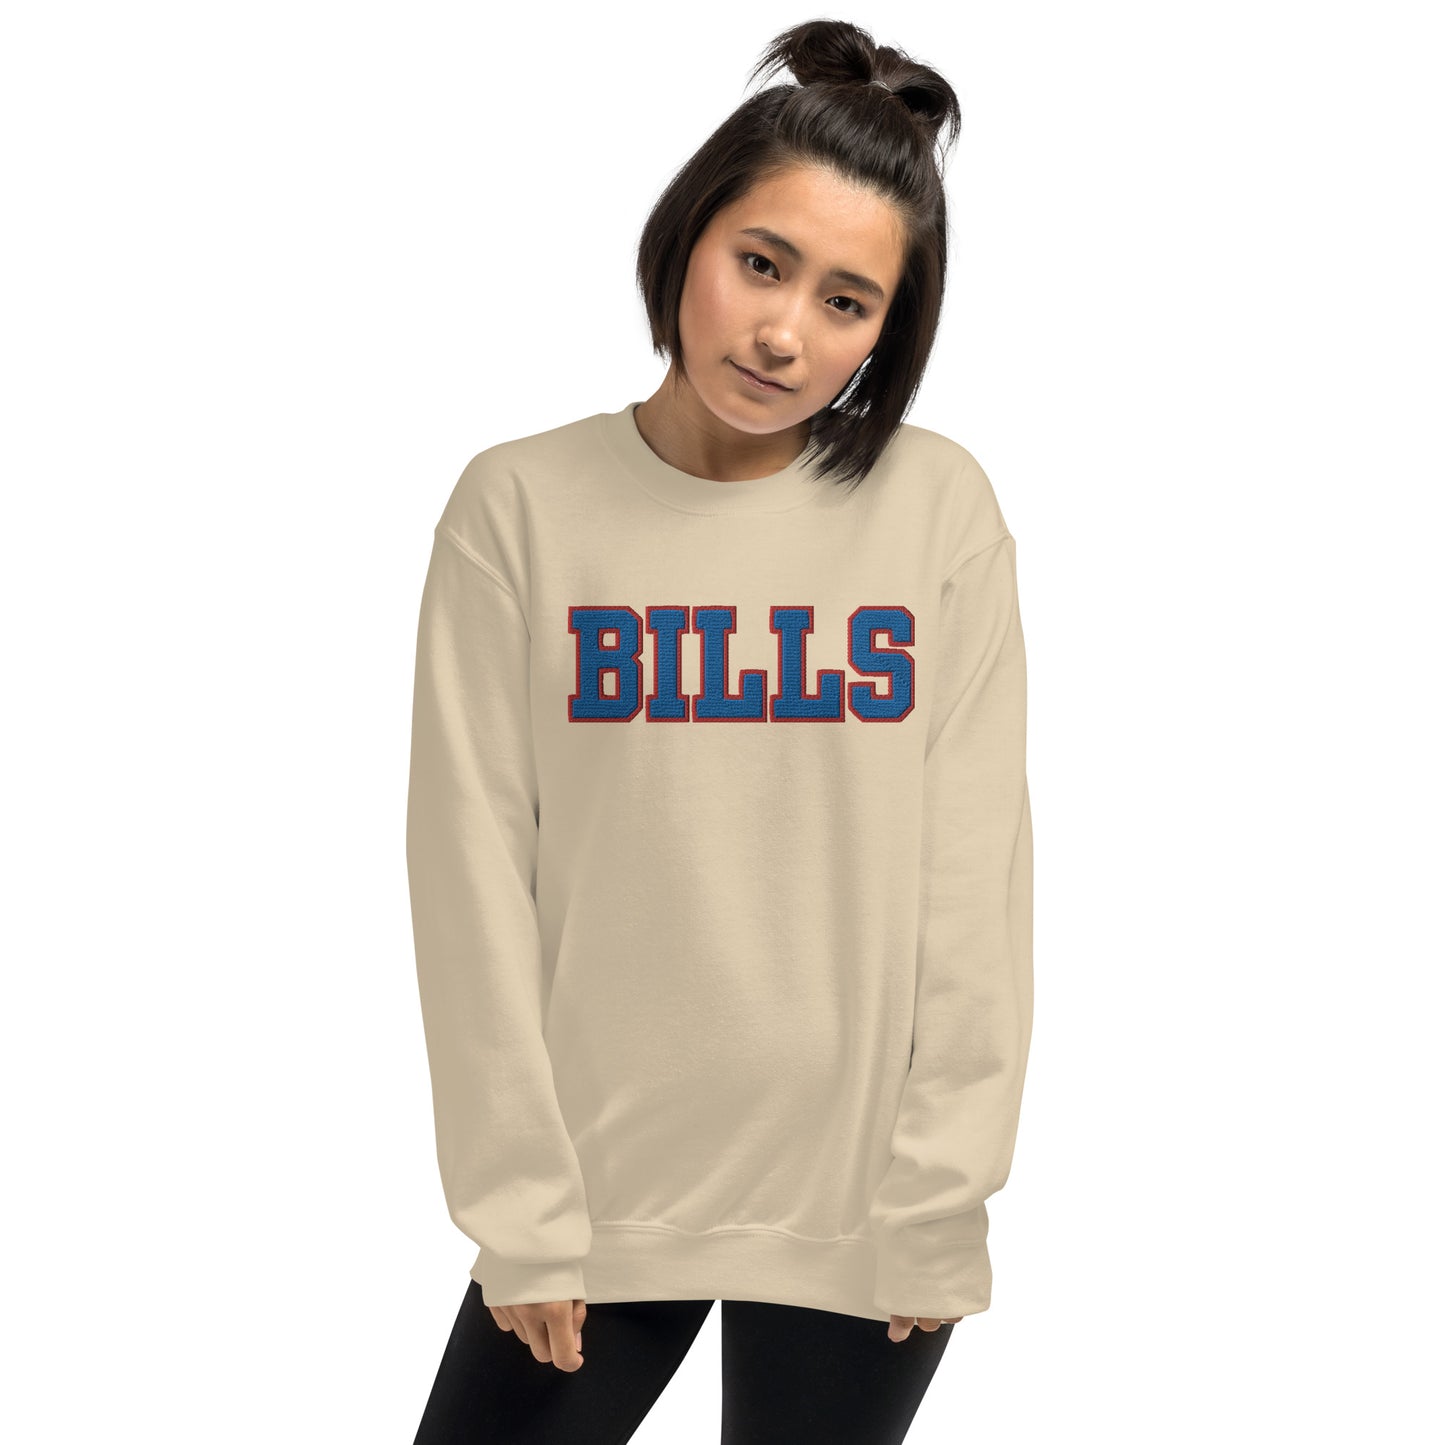 BILLS Crewneck Sweatshirt